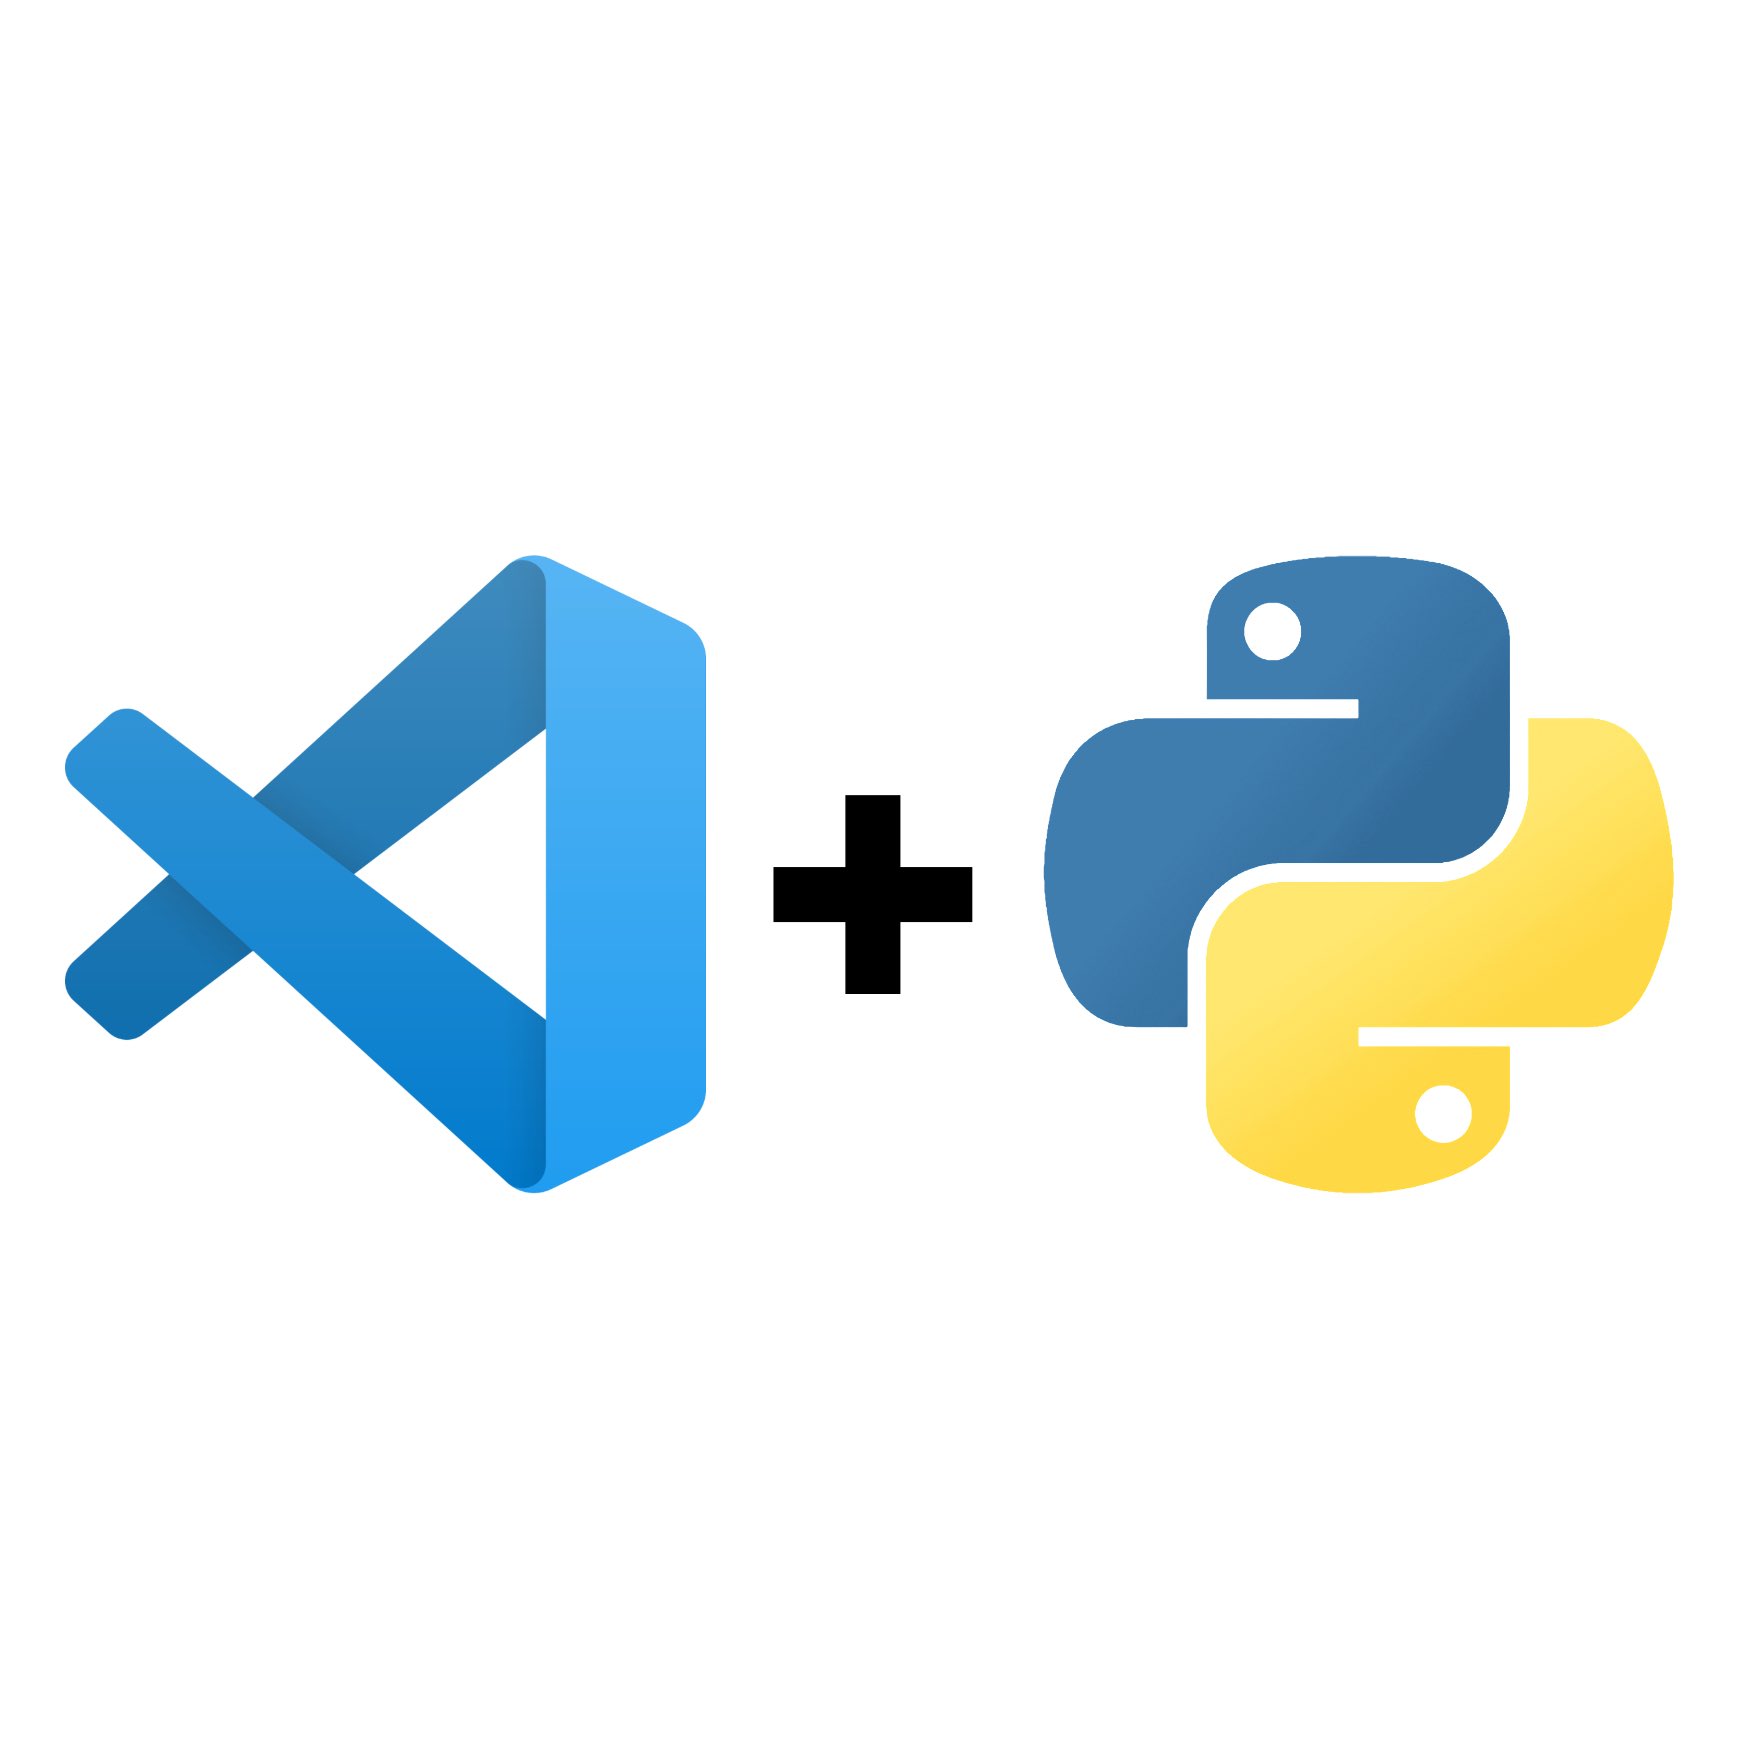 Setting up Visual Studio Code for Python
